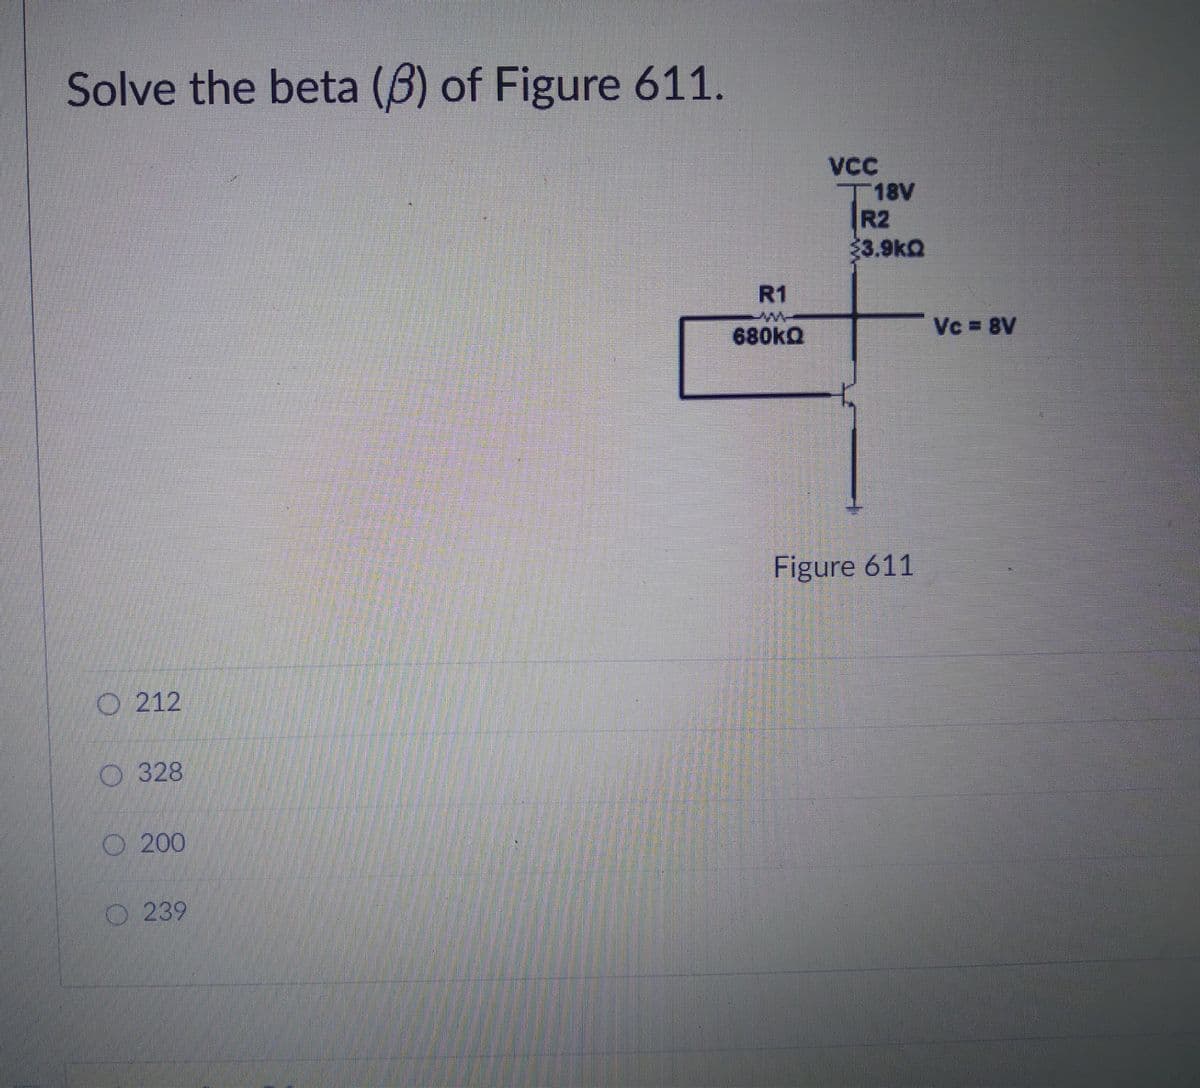 Solve the beta (B) of Figure 611.
VC
T18V
R2
33.9kQ
R1
680ka
Vc = 8V
Figure 611
O 212
O 328
O 200
O239
